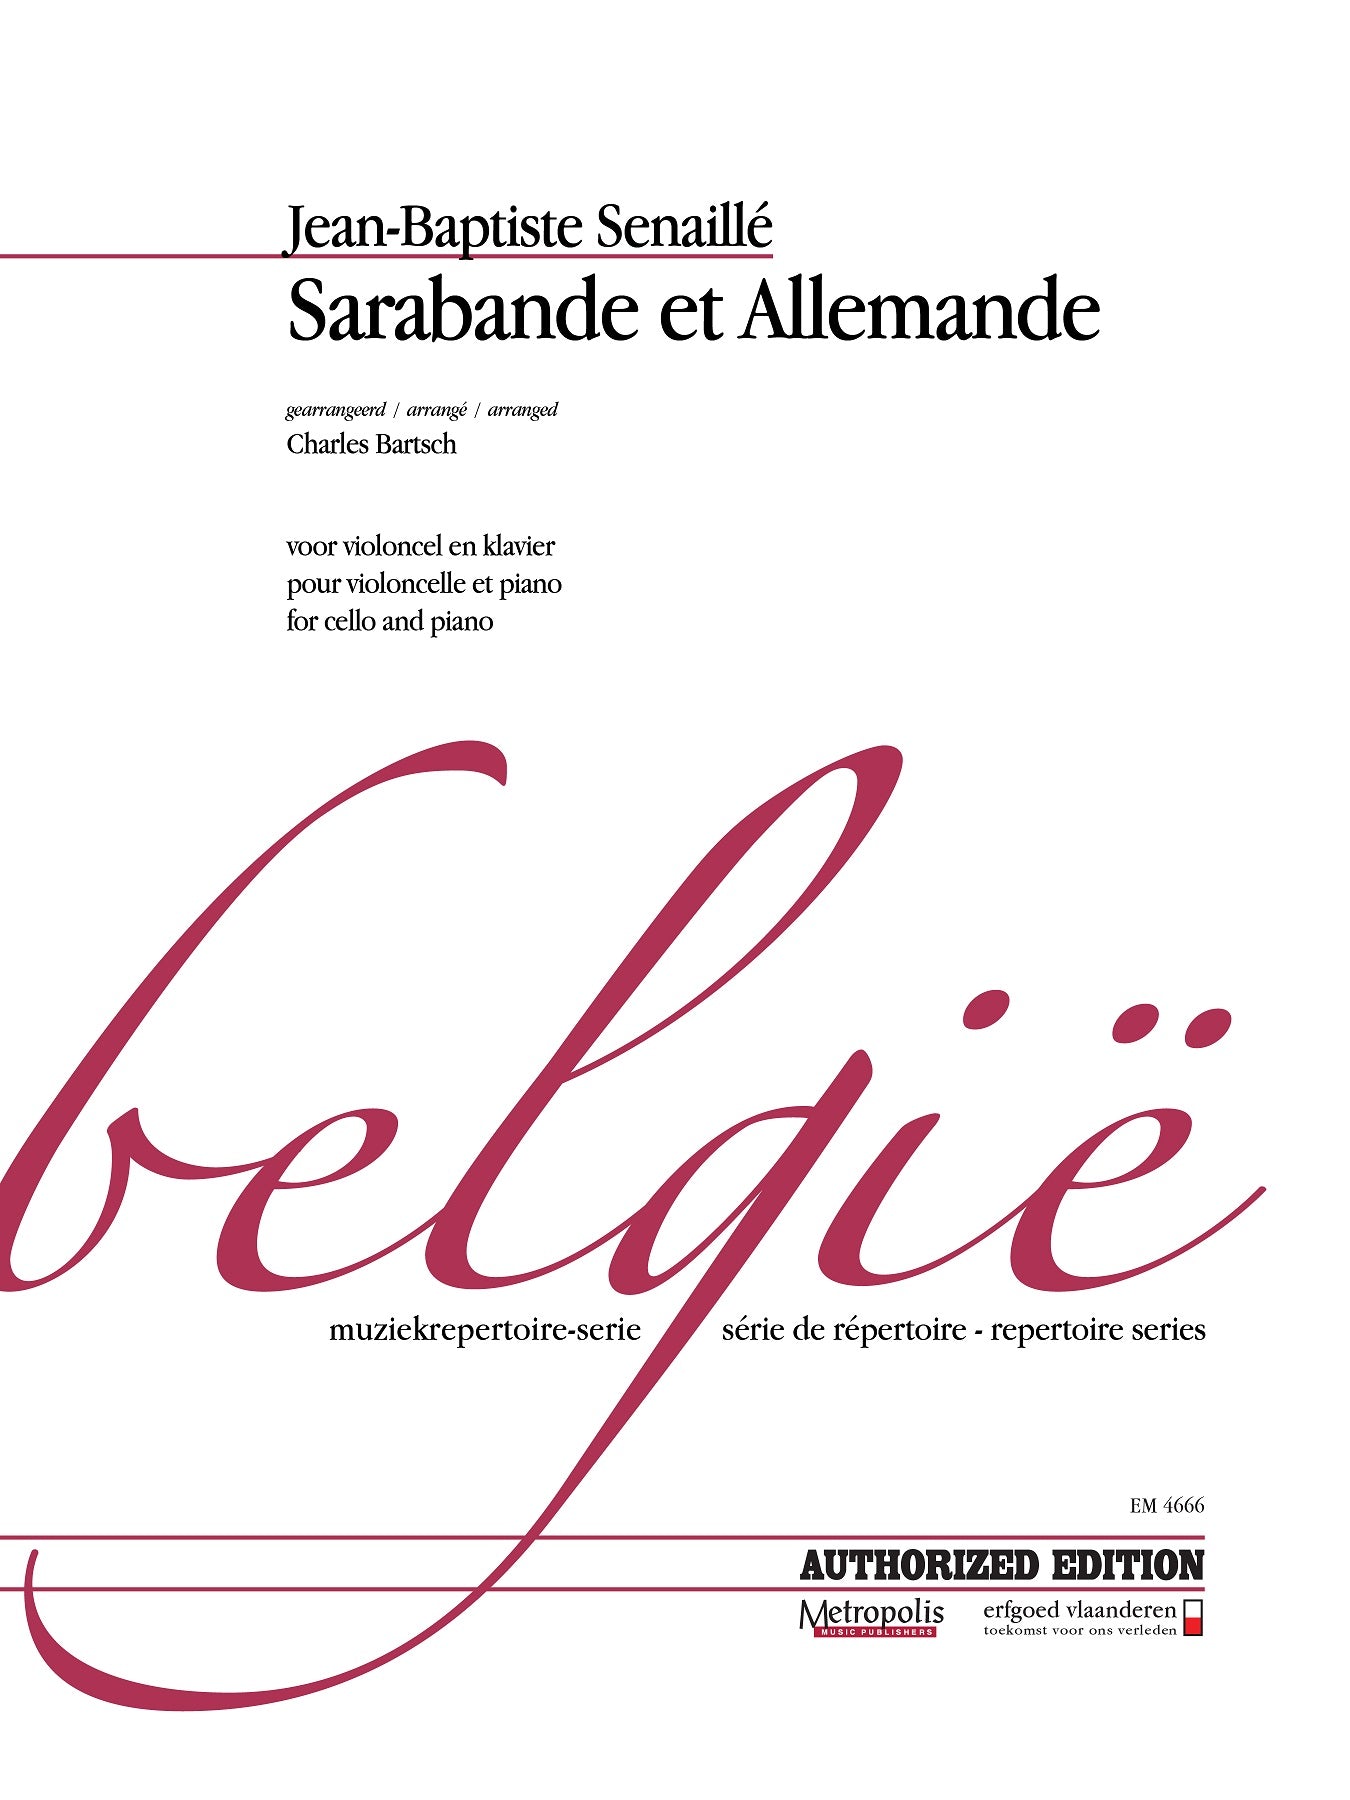 Senaillé: Sarabande et Allemande (arr. for cello and piano)